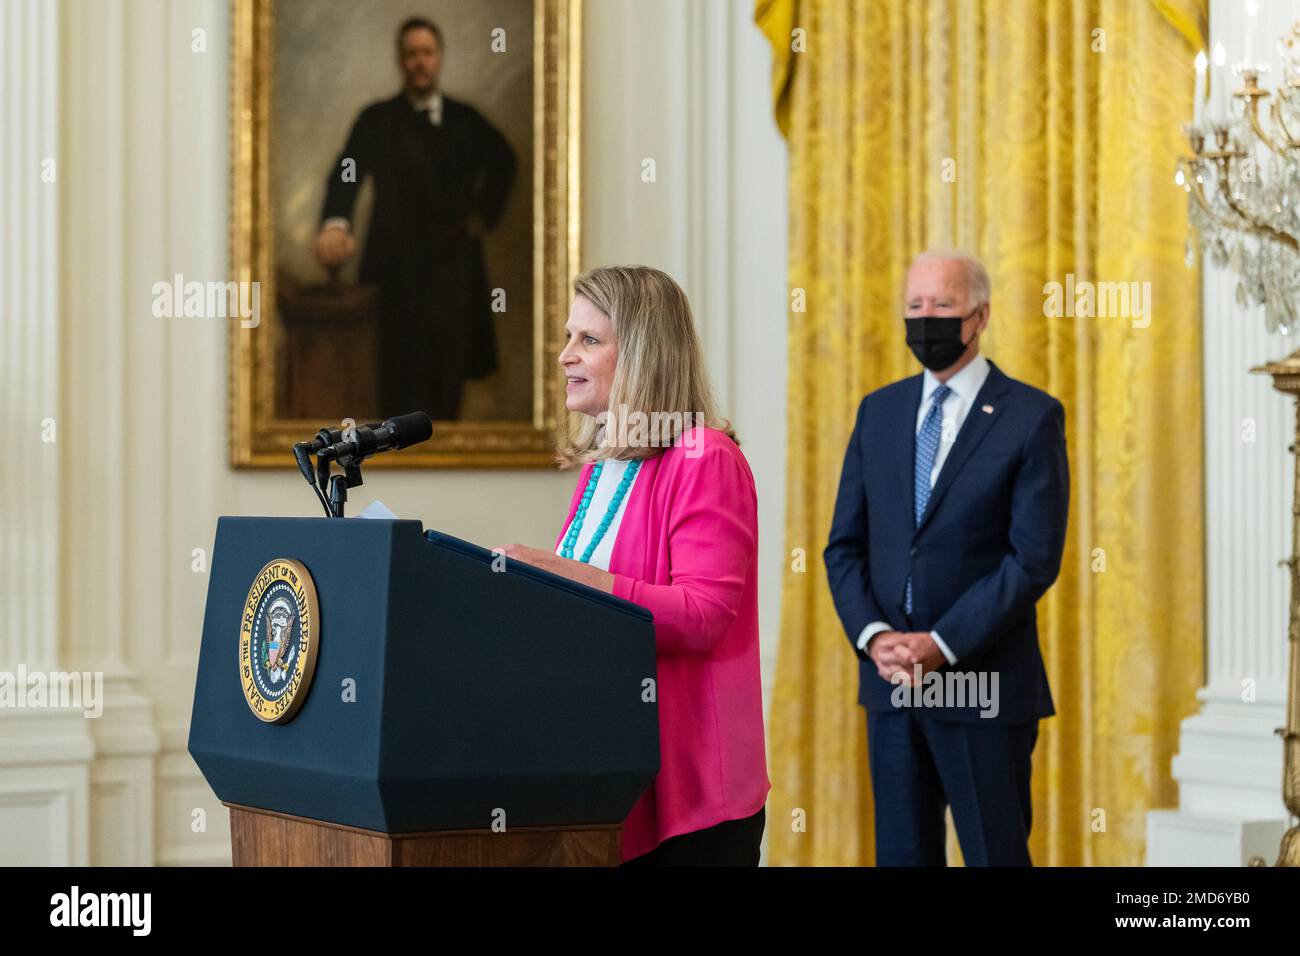 Reportage: Le président Joe Biden regarde tandis que le président de l'AFL-CIO Liz Shuler fait des remarques lors d'un événement de travail, mercredi, 8 septembre 2021 Banque D'Images